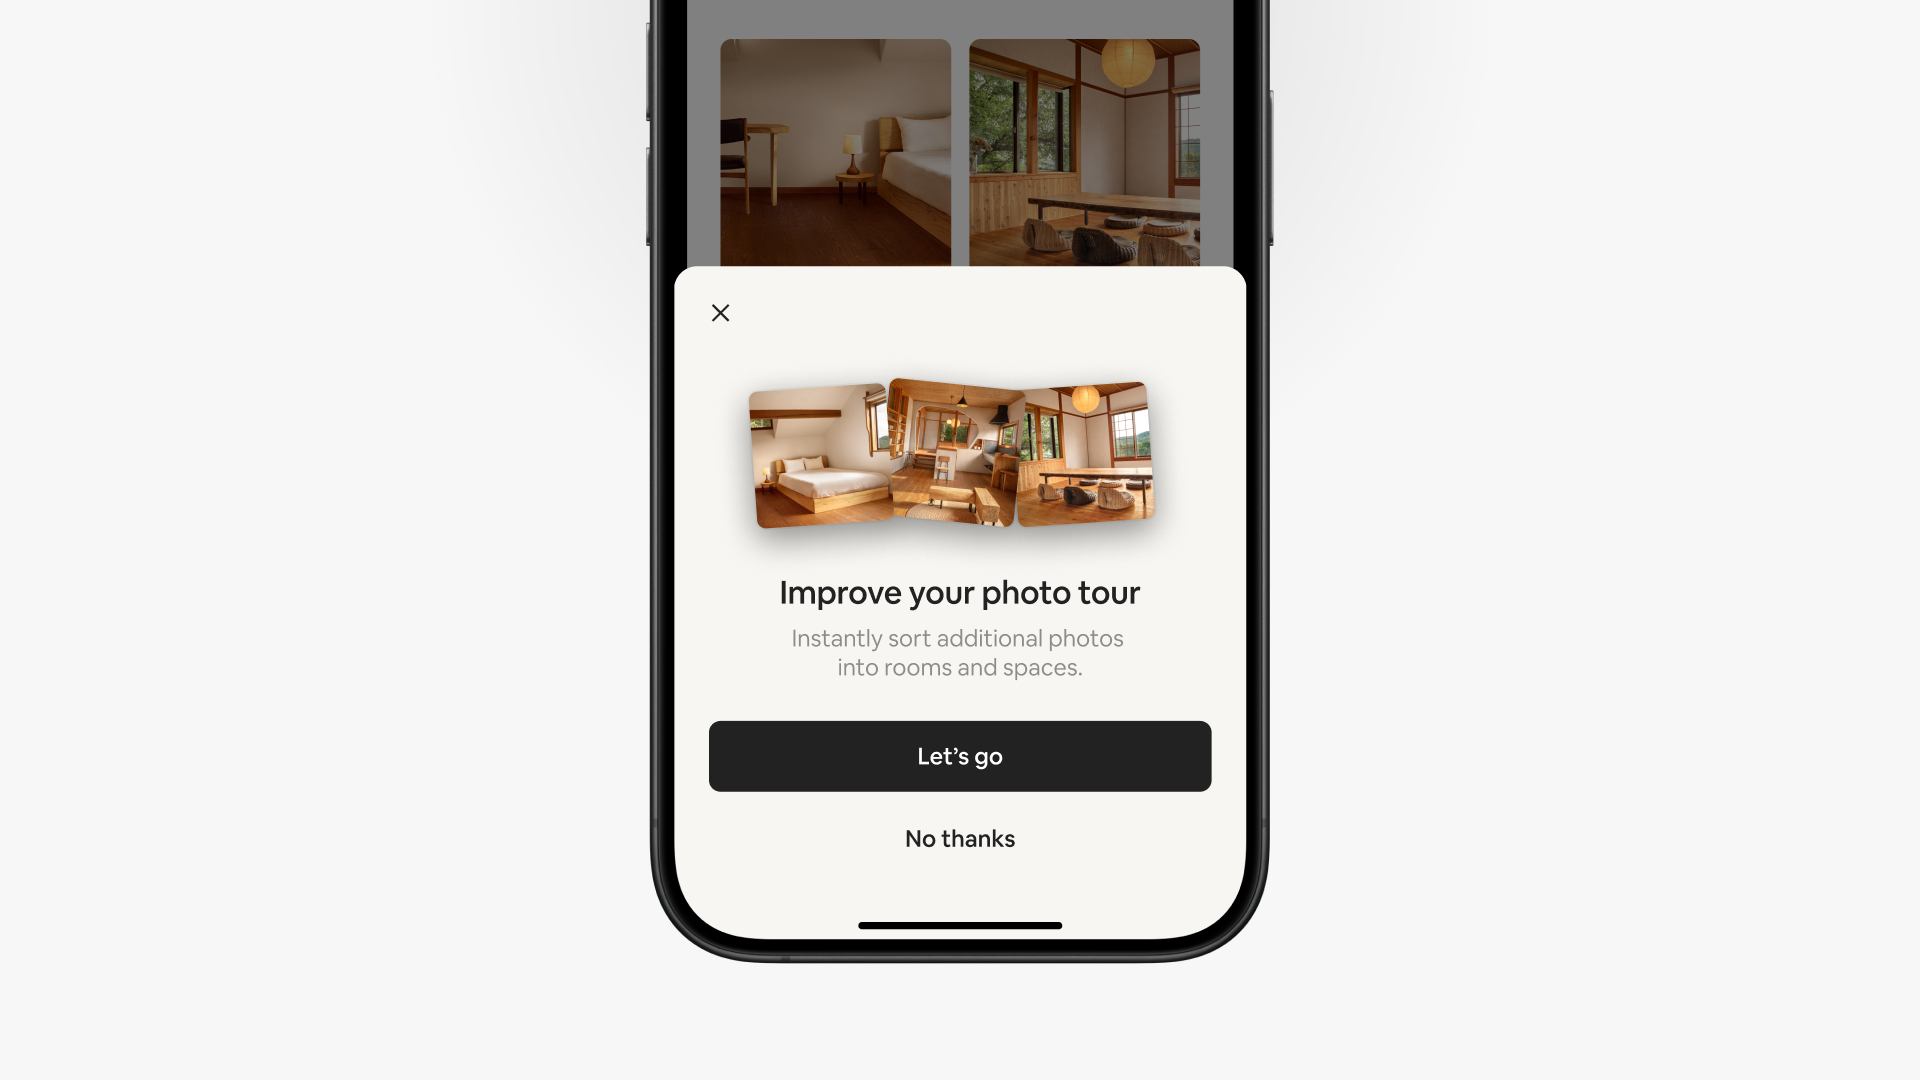 Airbnb uygulamasındaki bir açılır ekranda "Başlayalım" ve "Hayır, teşekkürler" düğmeleriyle sunulan iki seçeneğin üst kısmında "Fotoğraf turunuzu iyileştirin" yazıyor.